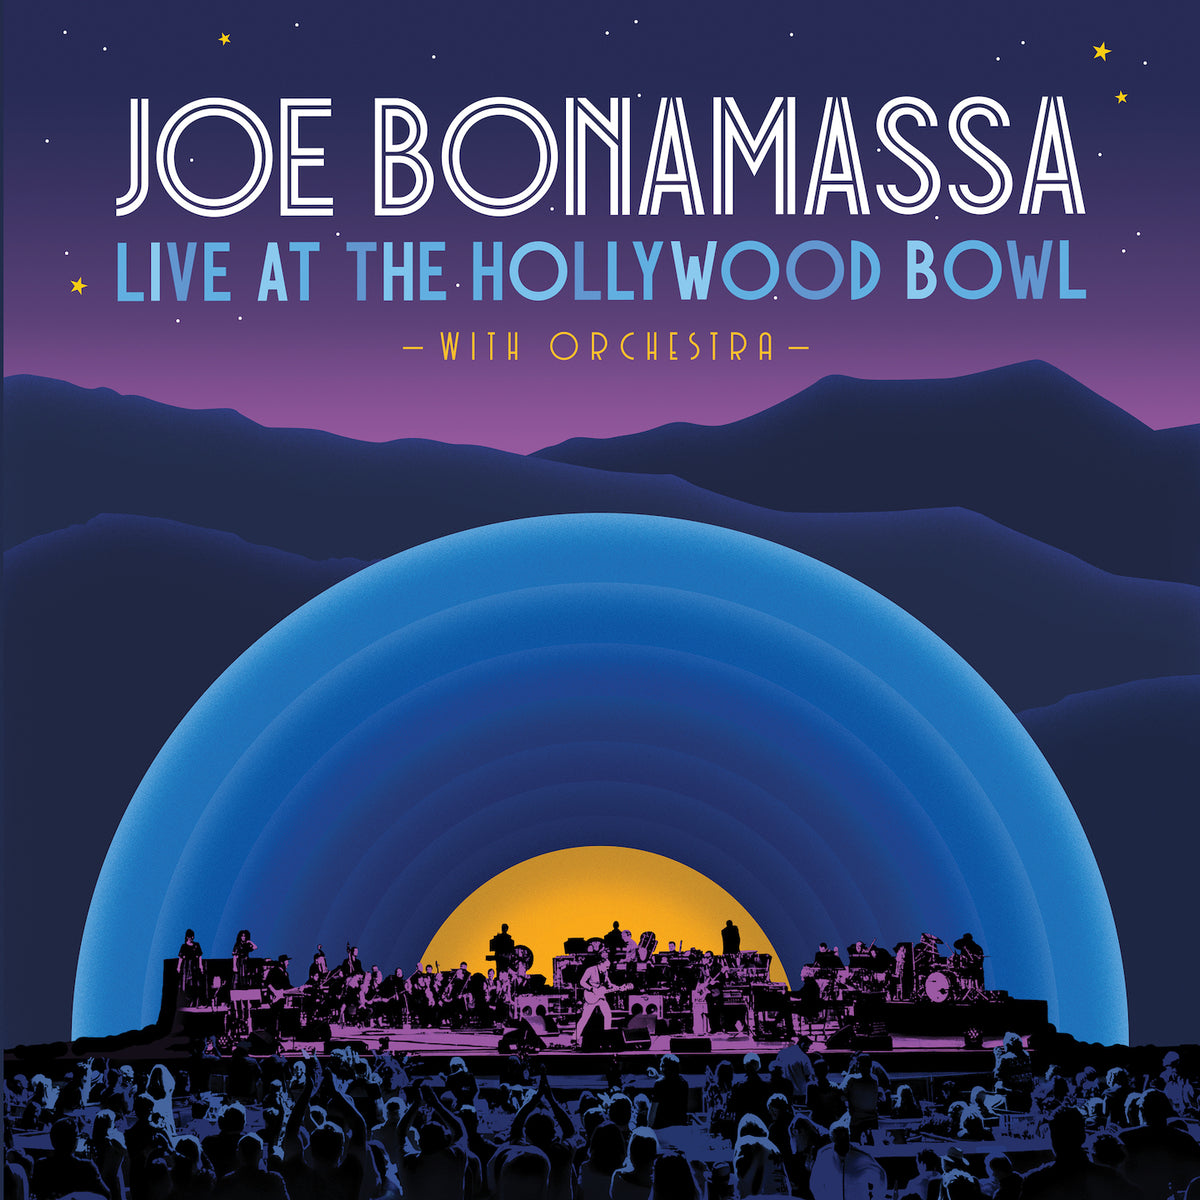 Twenty-Four Hours Blues (Live at the Hollywood Bowl with Orchestra) - Joe Bonamassa - Single